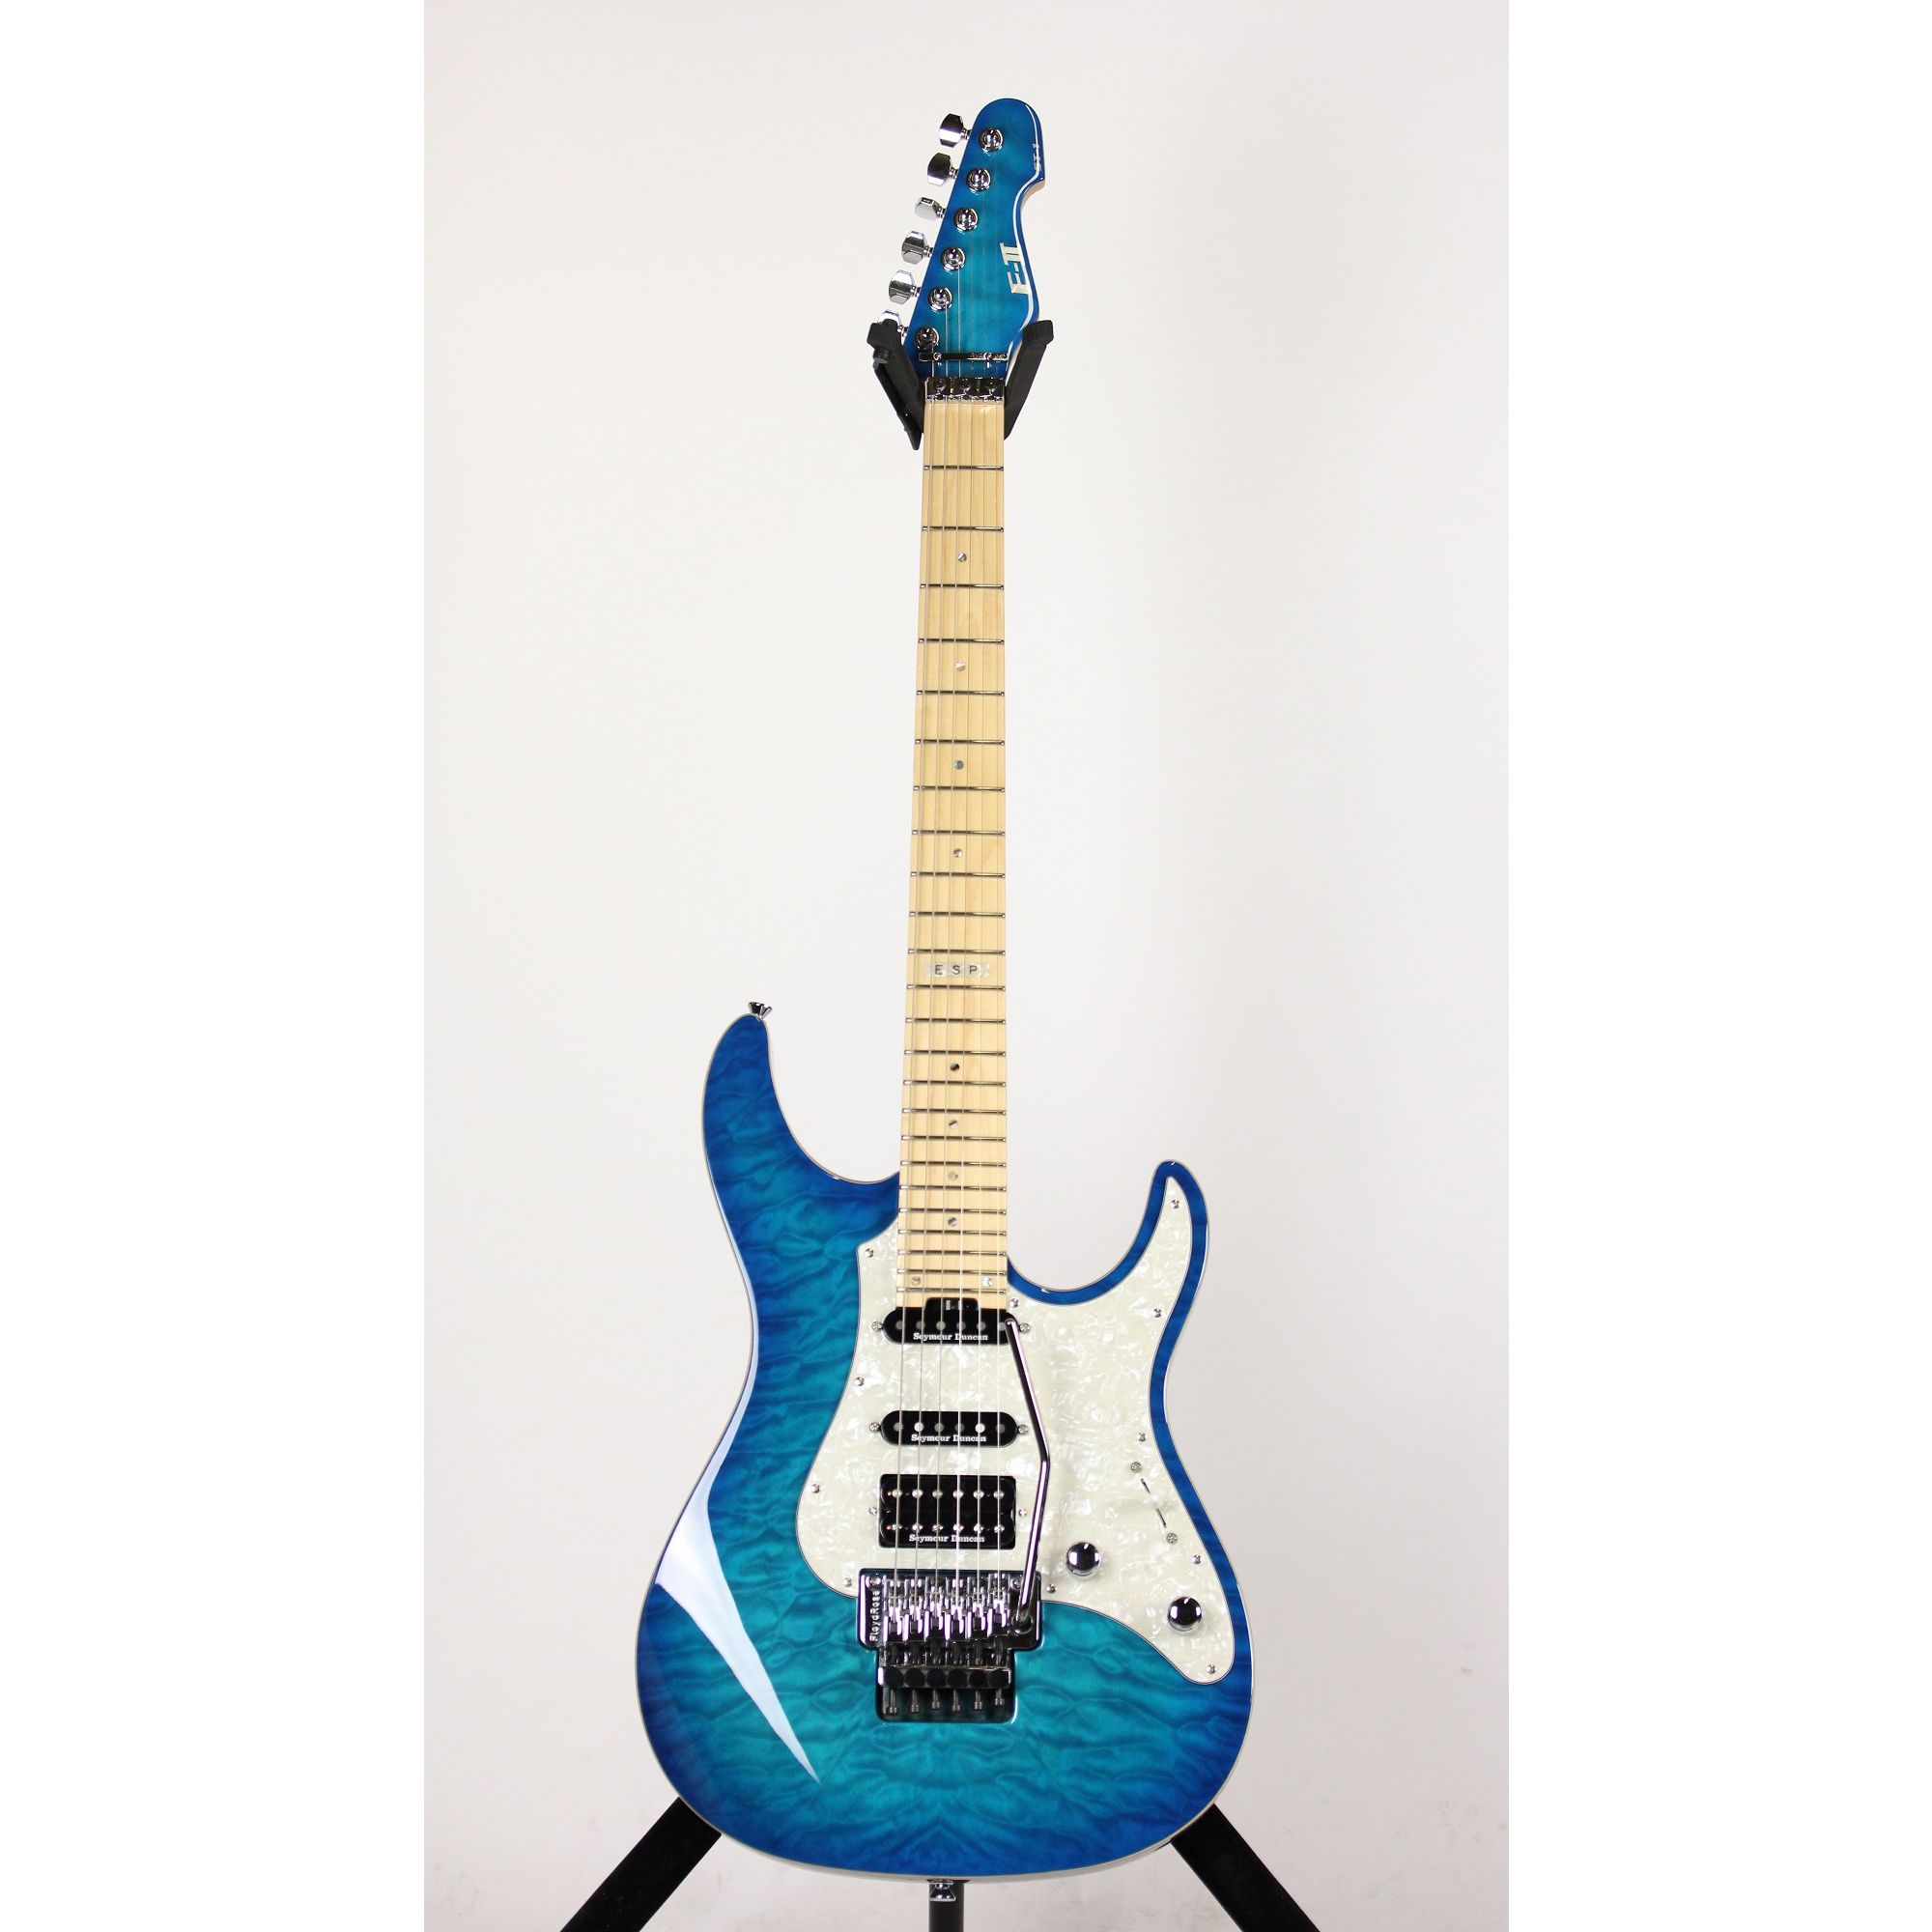 販売お得セール E-Ⅱ ESP ST-1 marine Aqua エレキギター